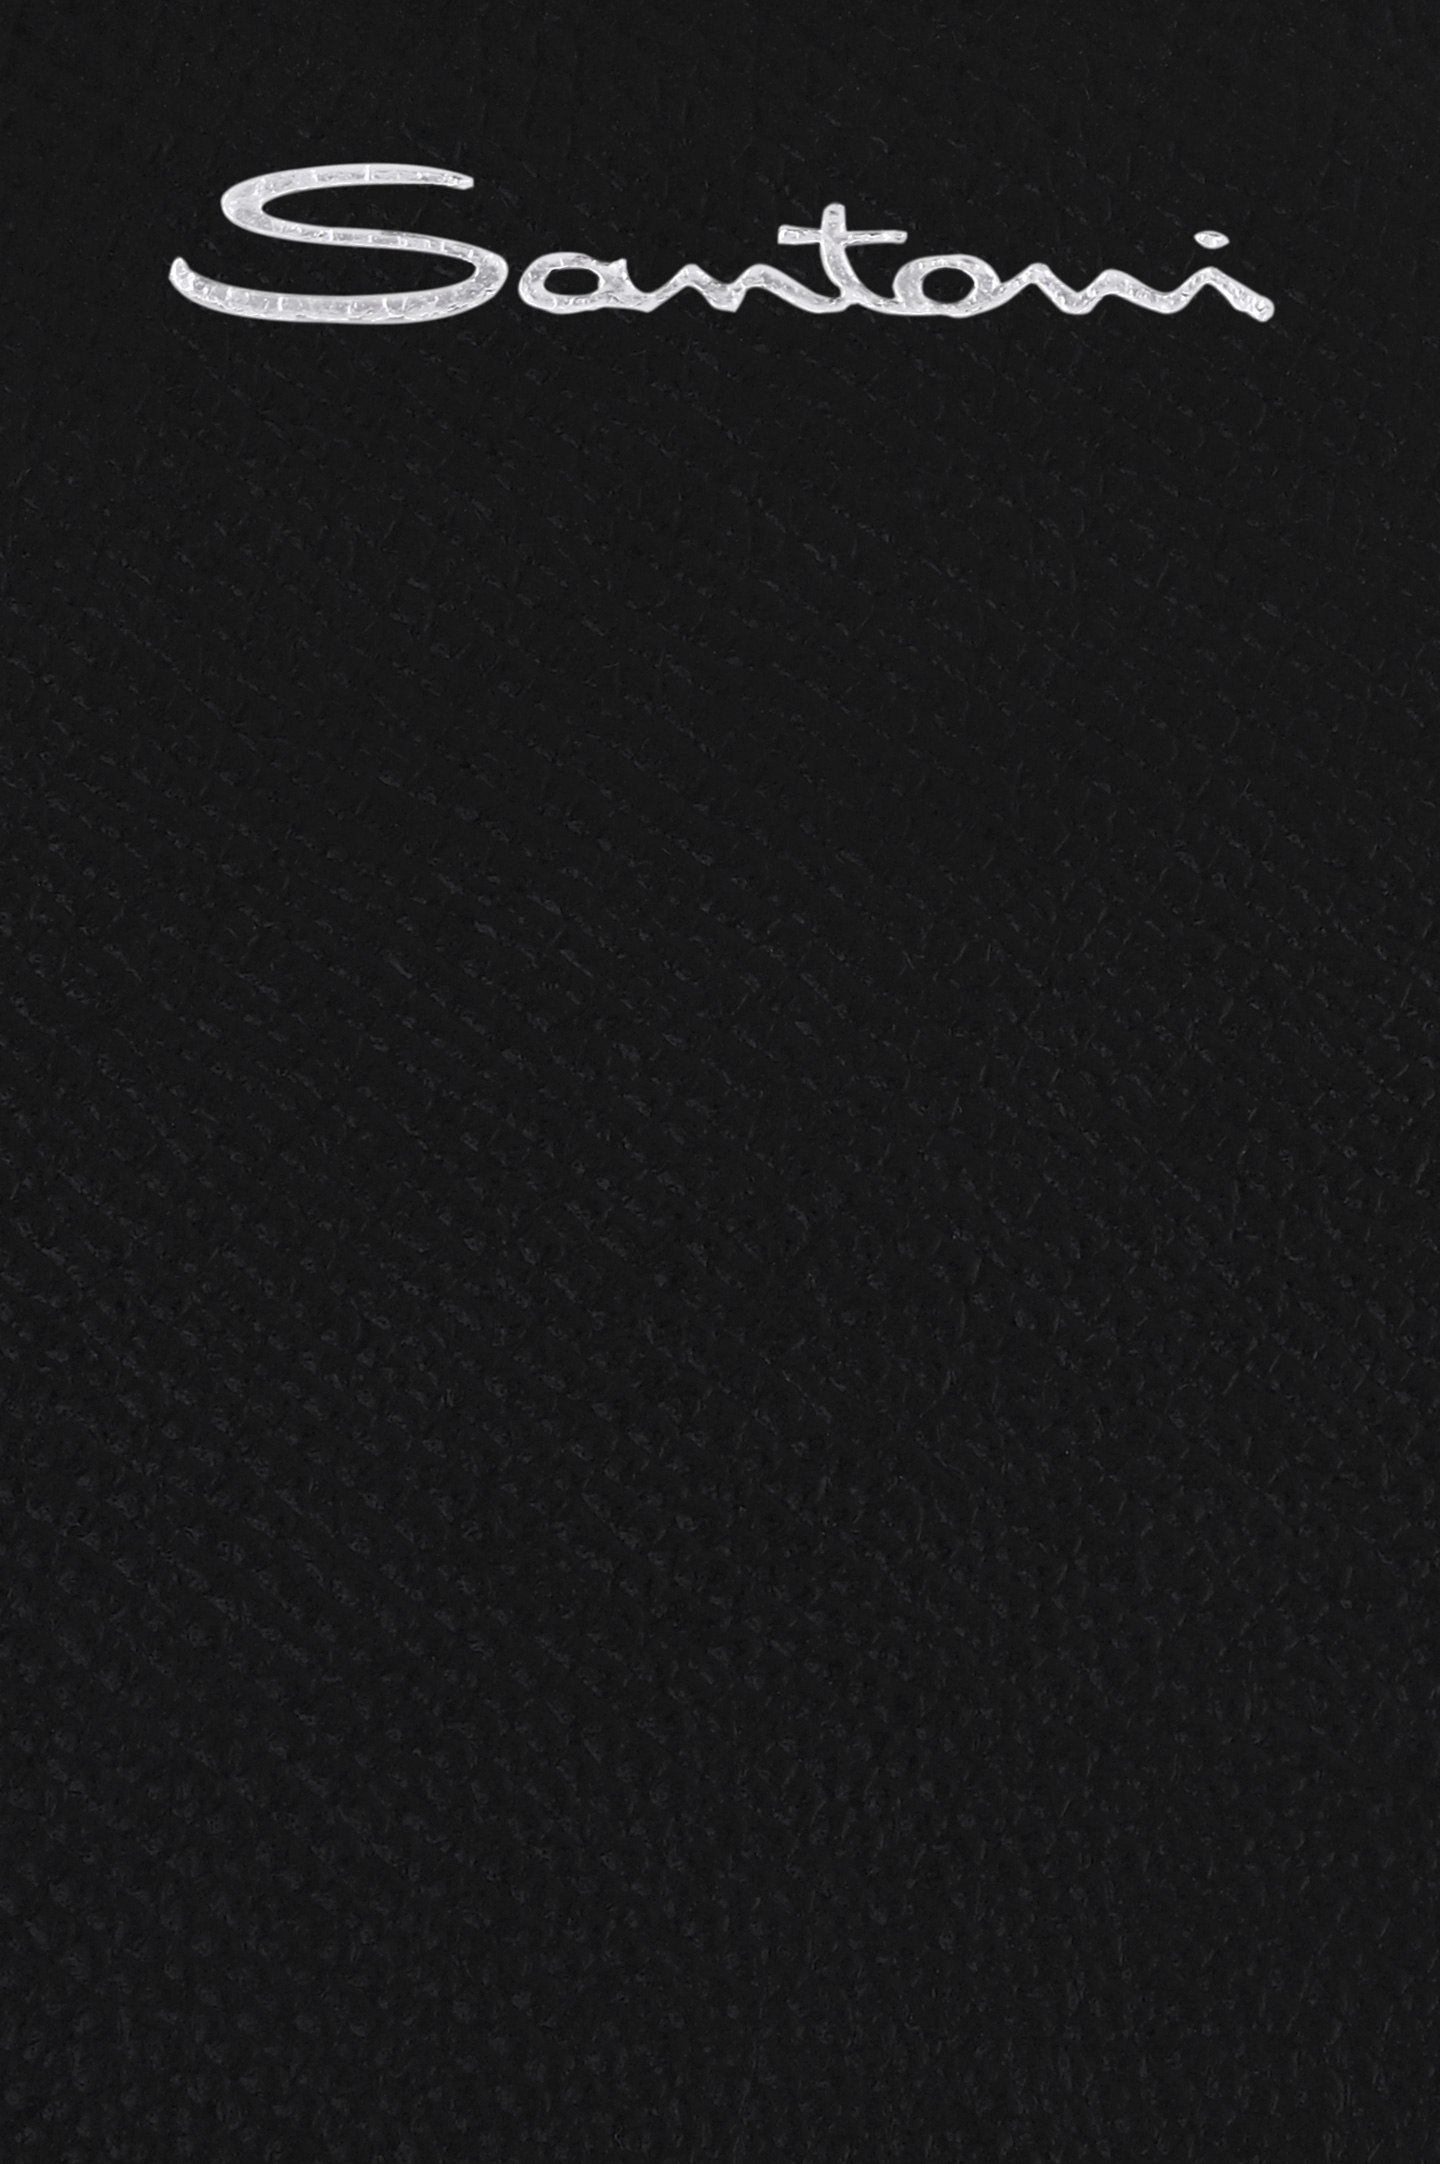 Кошелек SANTONI UFPPA2372FO-ANCFN01, цвет: Черный, Женский